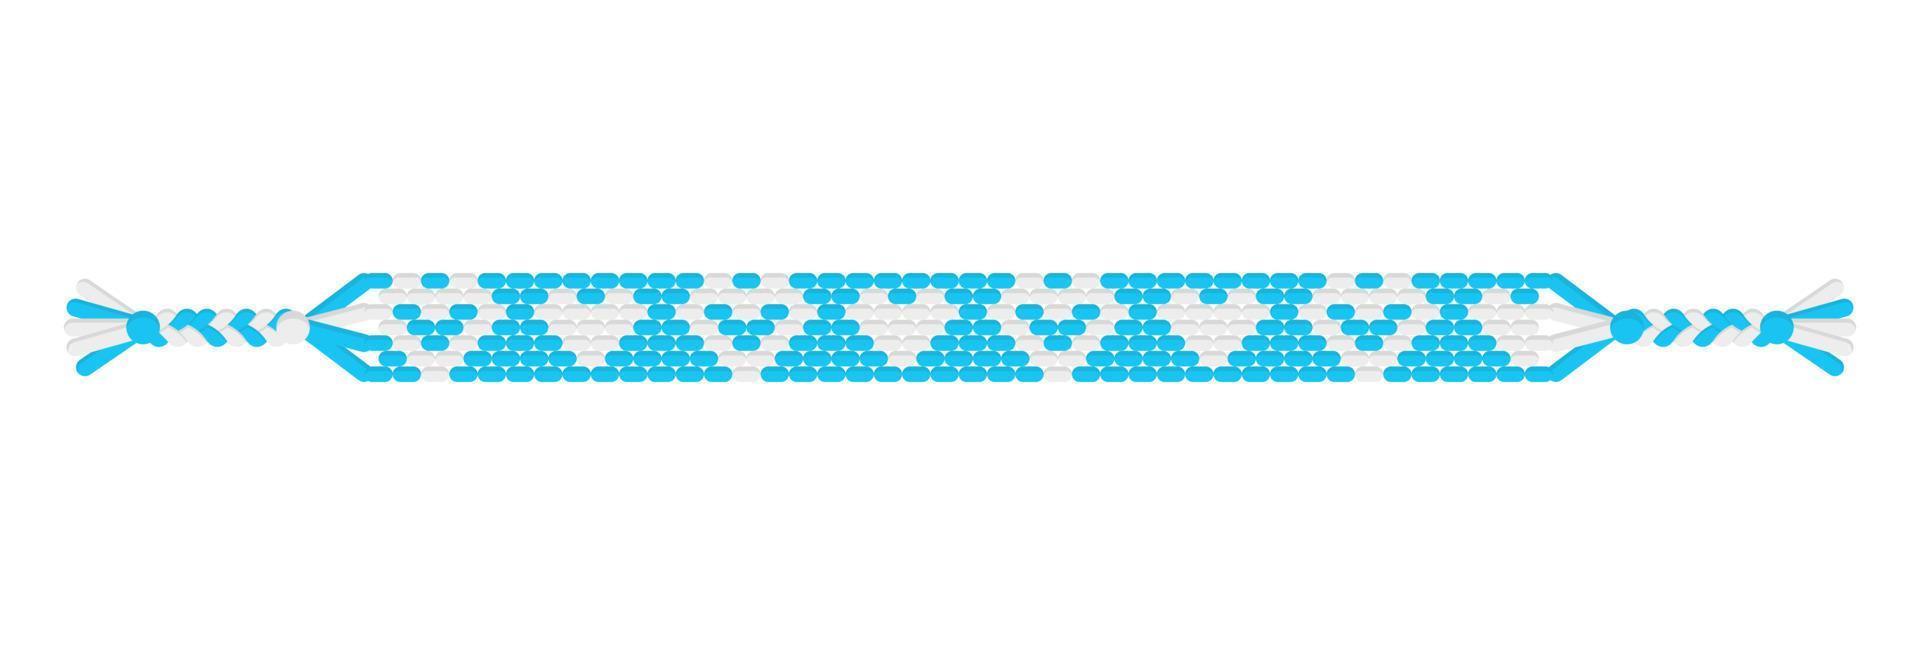 vettore boho love braccialetto di amicizia hippie fatto a mano di fili blu e bianchi.